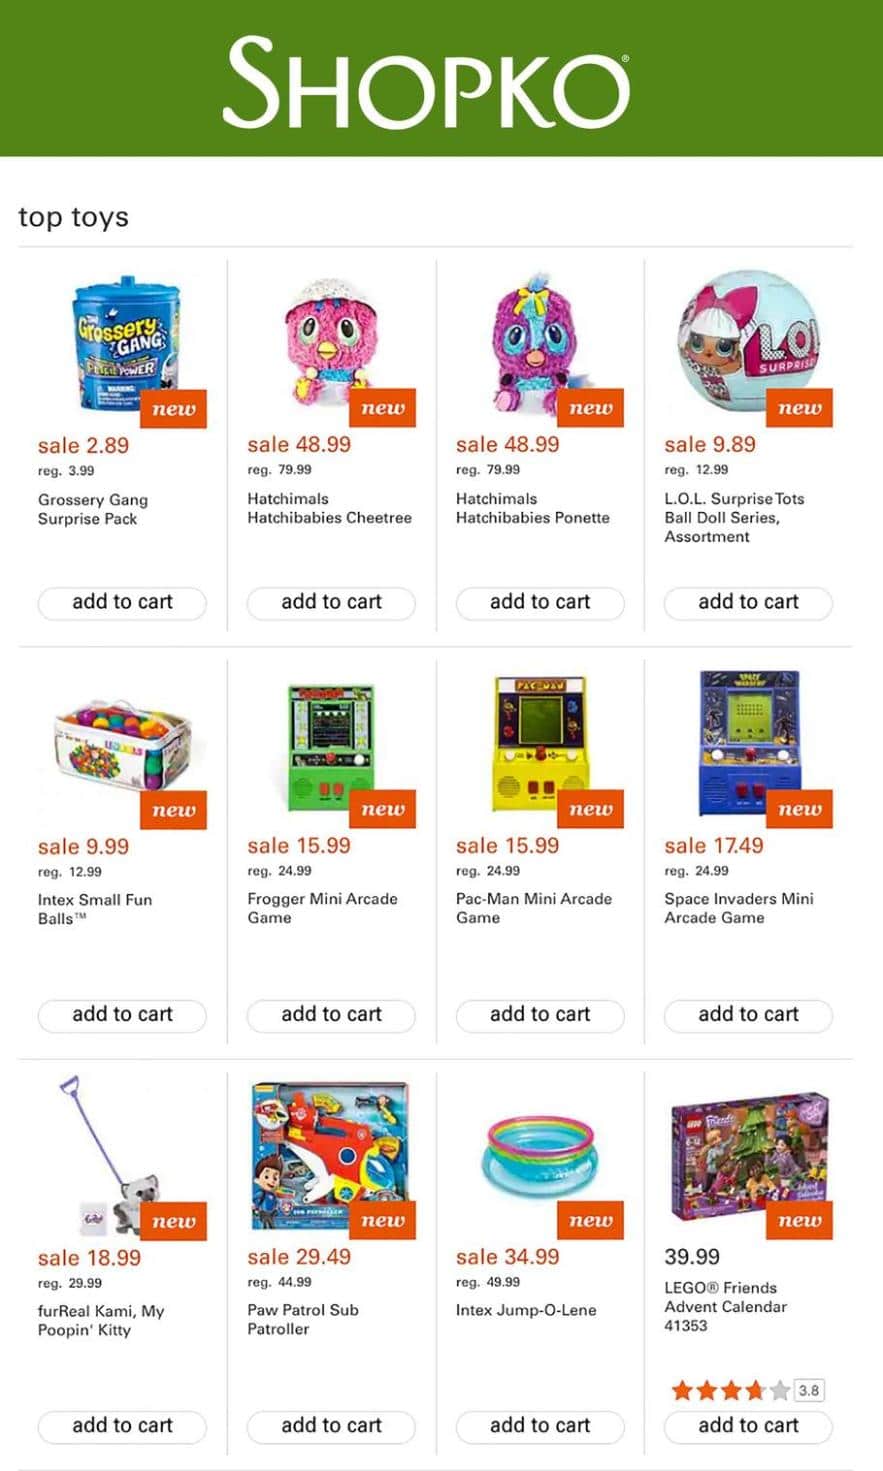 Shopko Toy Catalog